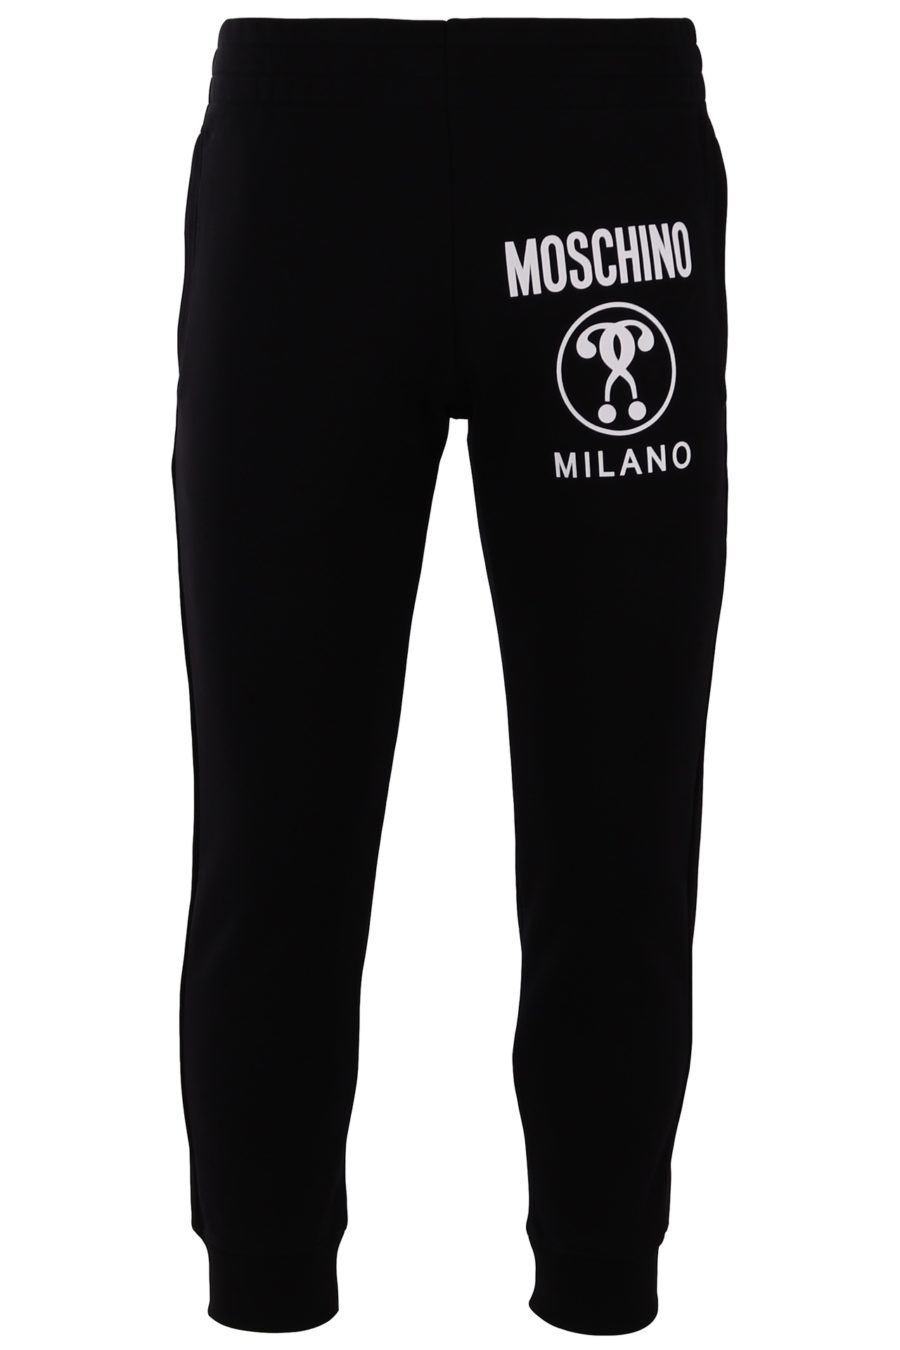 Pantalón Moschino Couture negro con logo grande - 482c517e30947e9e95ad07b6e8c33182dc14b19c